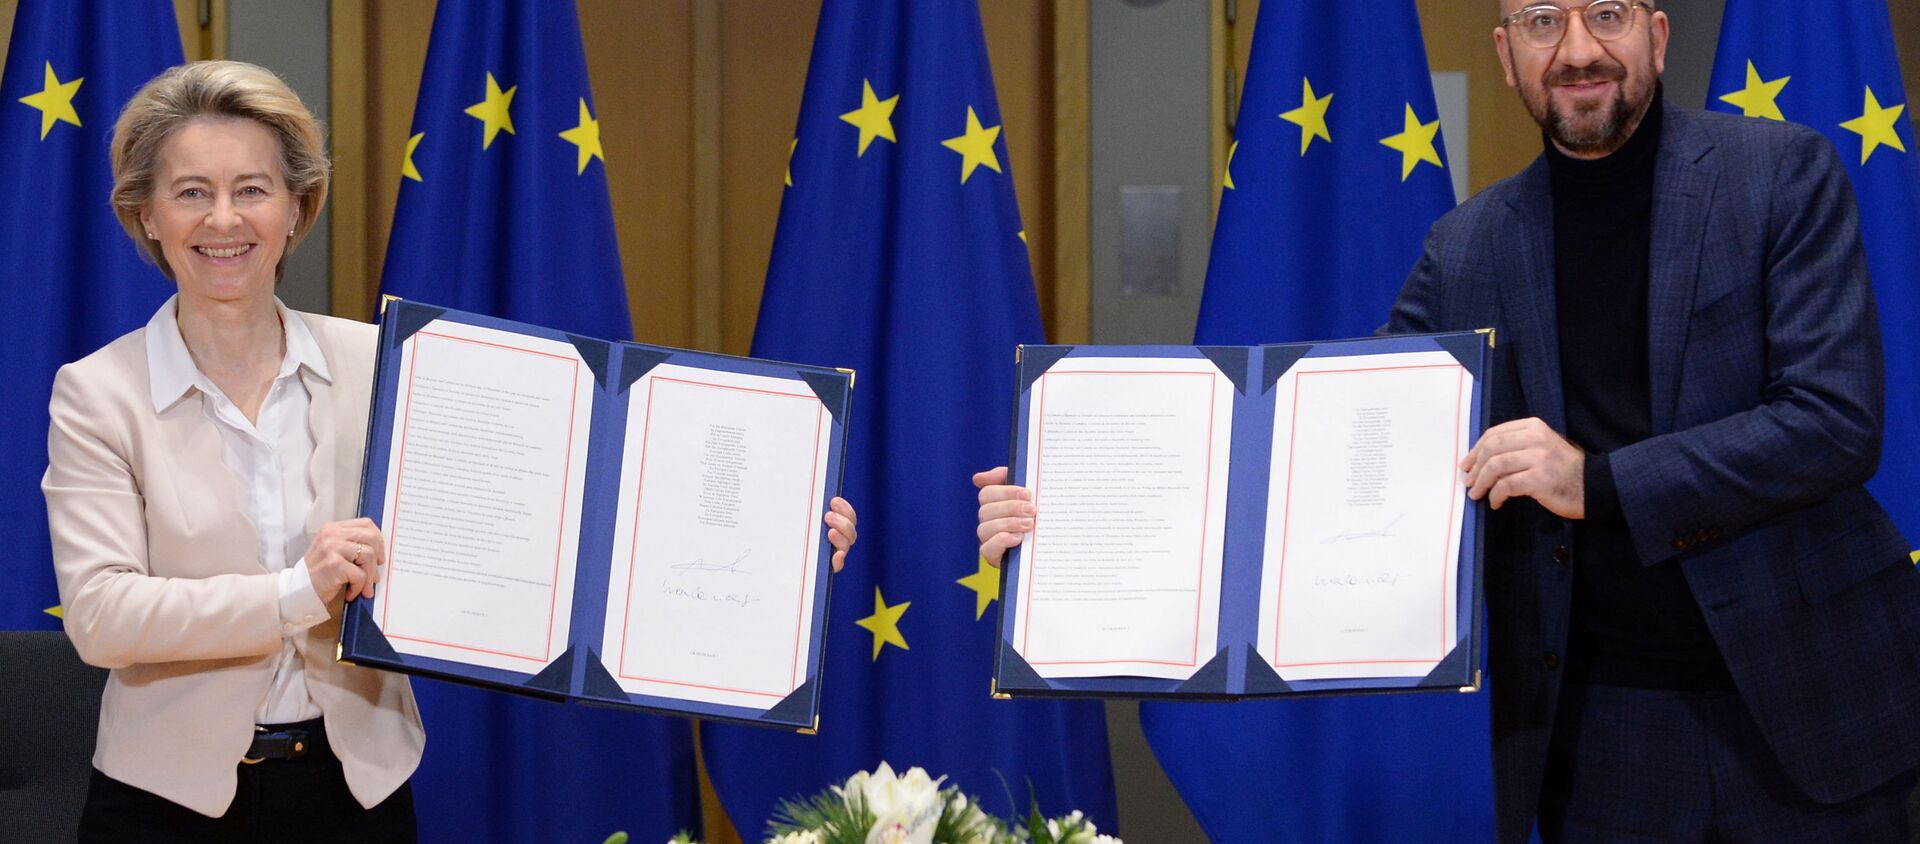 Chủ tịch Ủy ban châu Âu Ursula von der Leyen và Chủ tịch Hội đồng châu Âu Charles Michel Shaw ký thỏa thuận thương mại về Brexit. - Sputnik Việt Nam, 1920, 31.12.2020